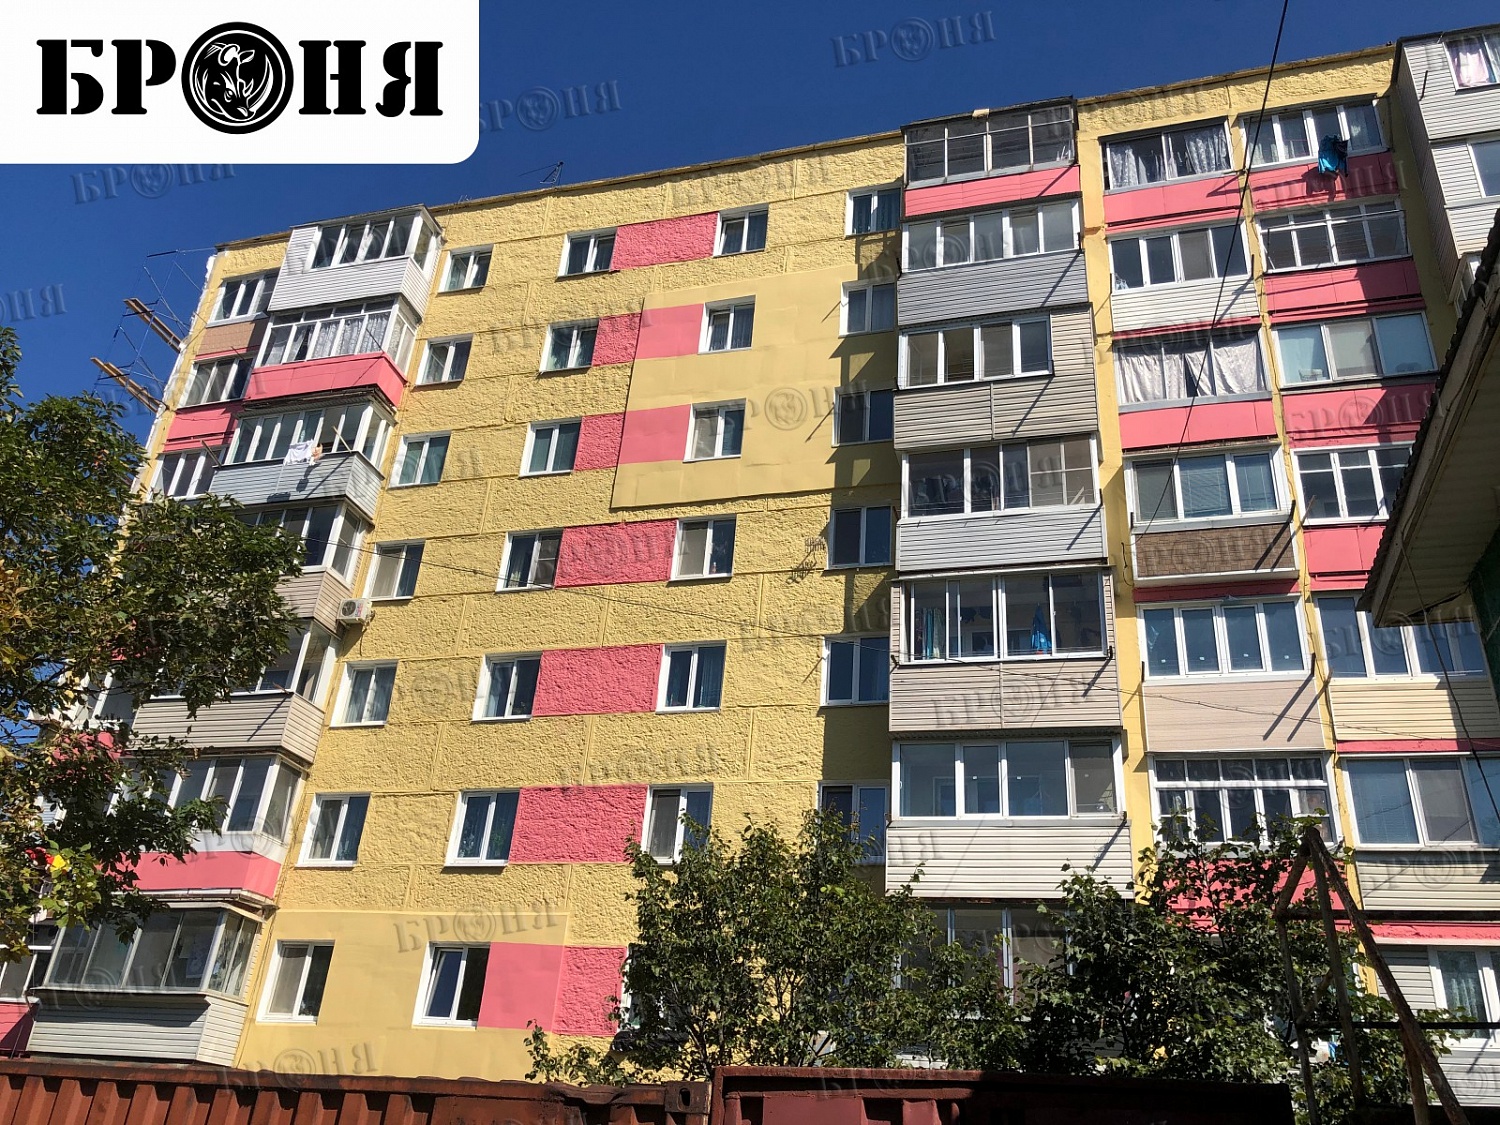 Владивосток, Броня АкваБлок при дополнительной изоляции "мокрого фасада" многоквартирного жилого дома